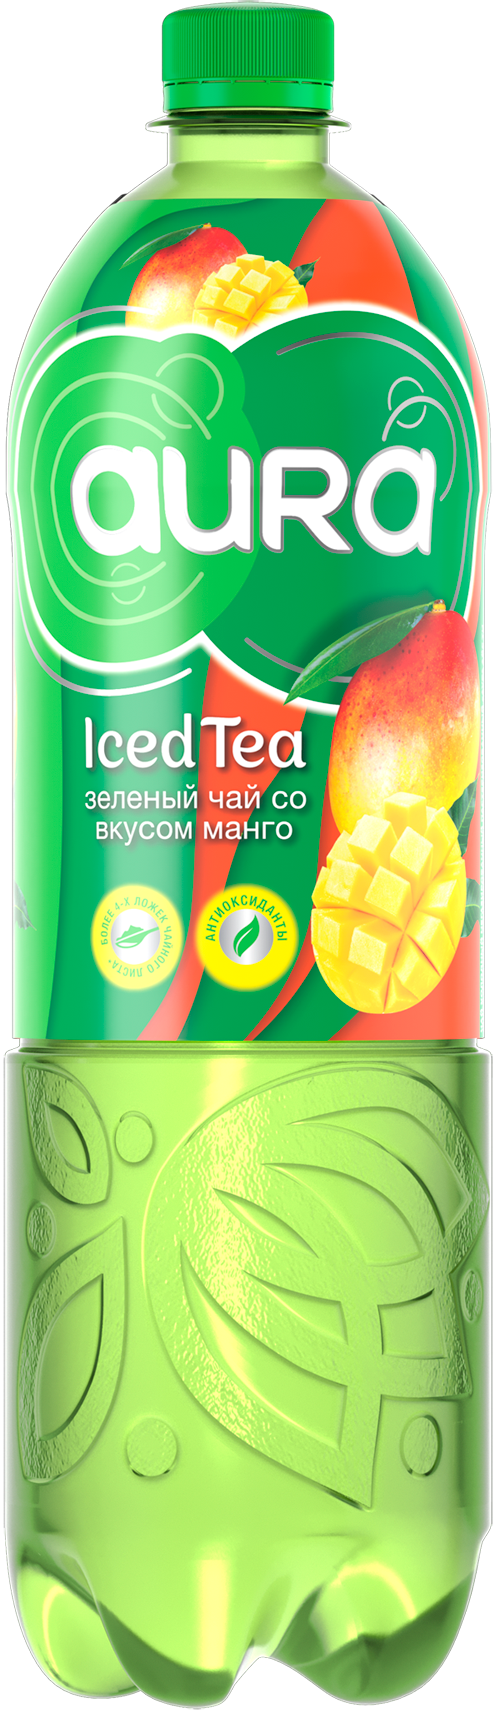 Aura Iced Tea Зелёный чай со вкусом манго